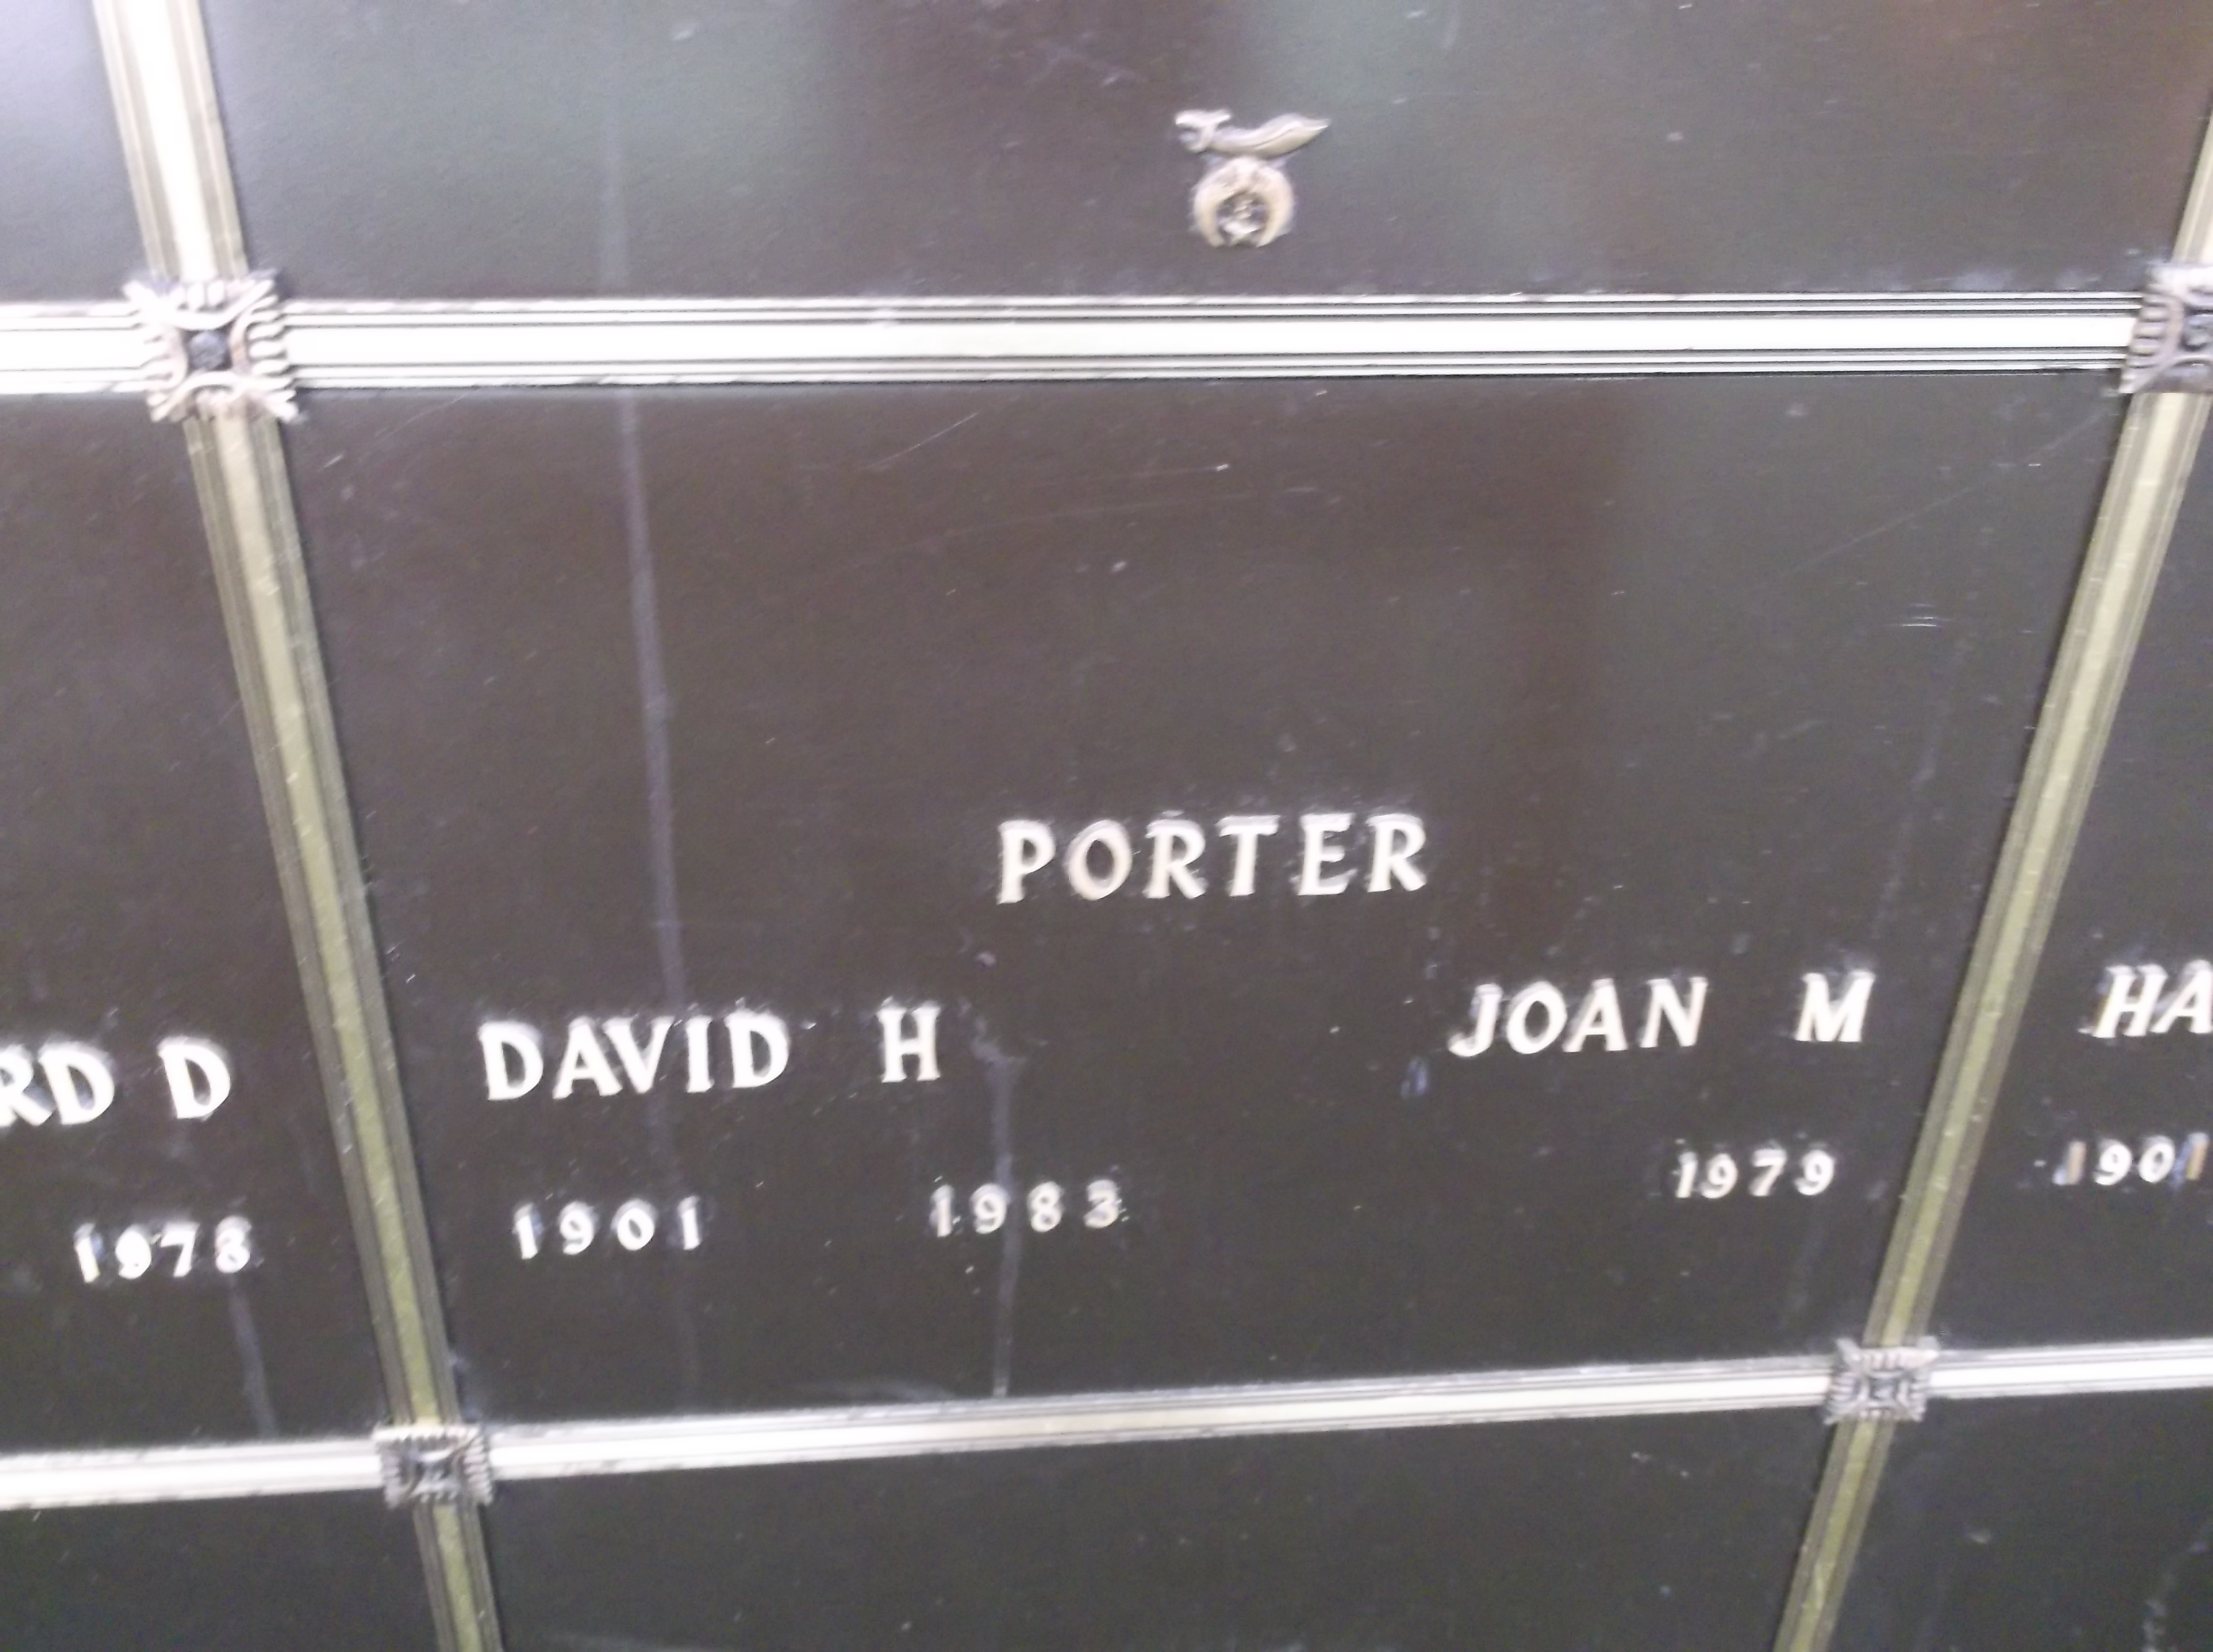 Joan M Porter